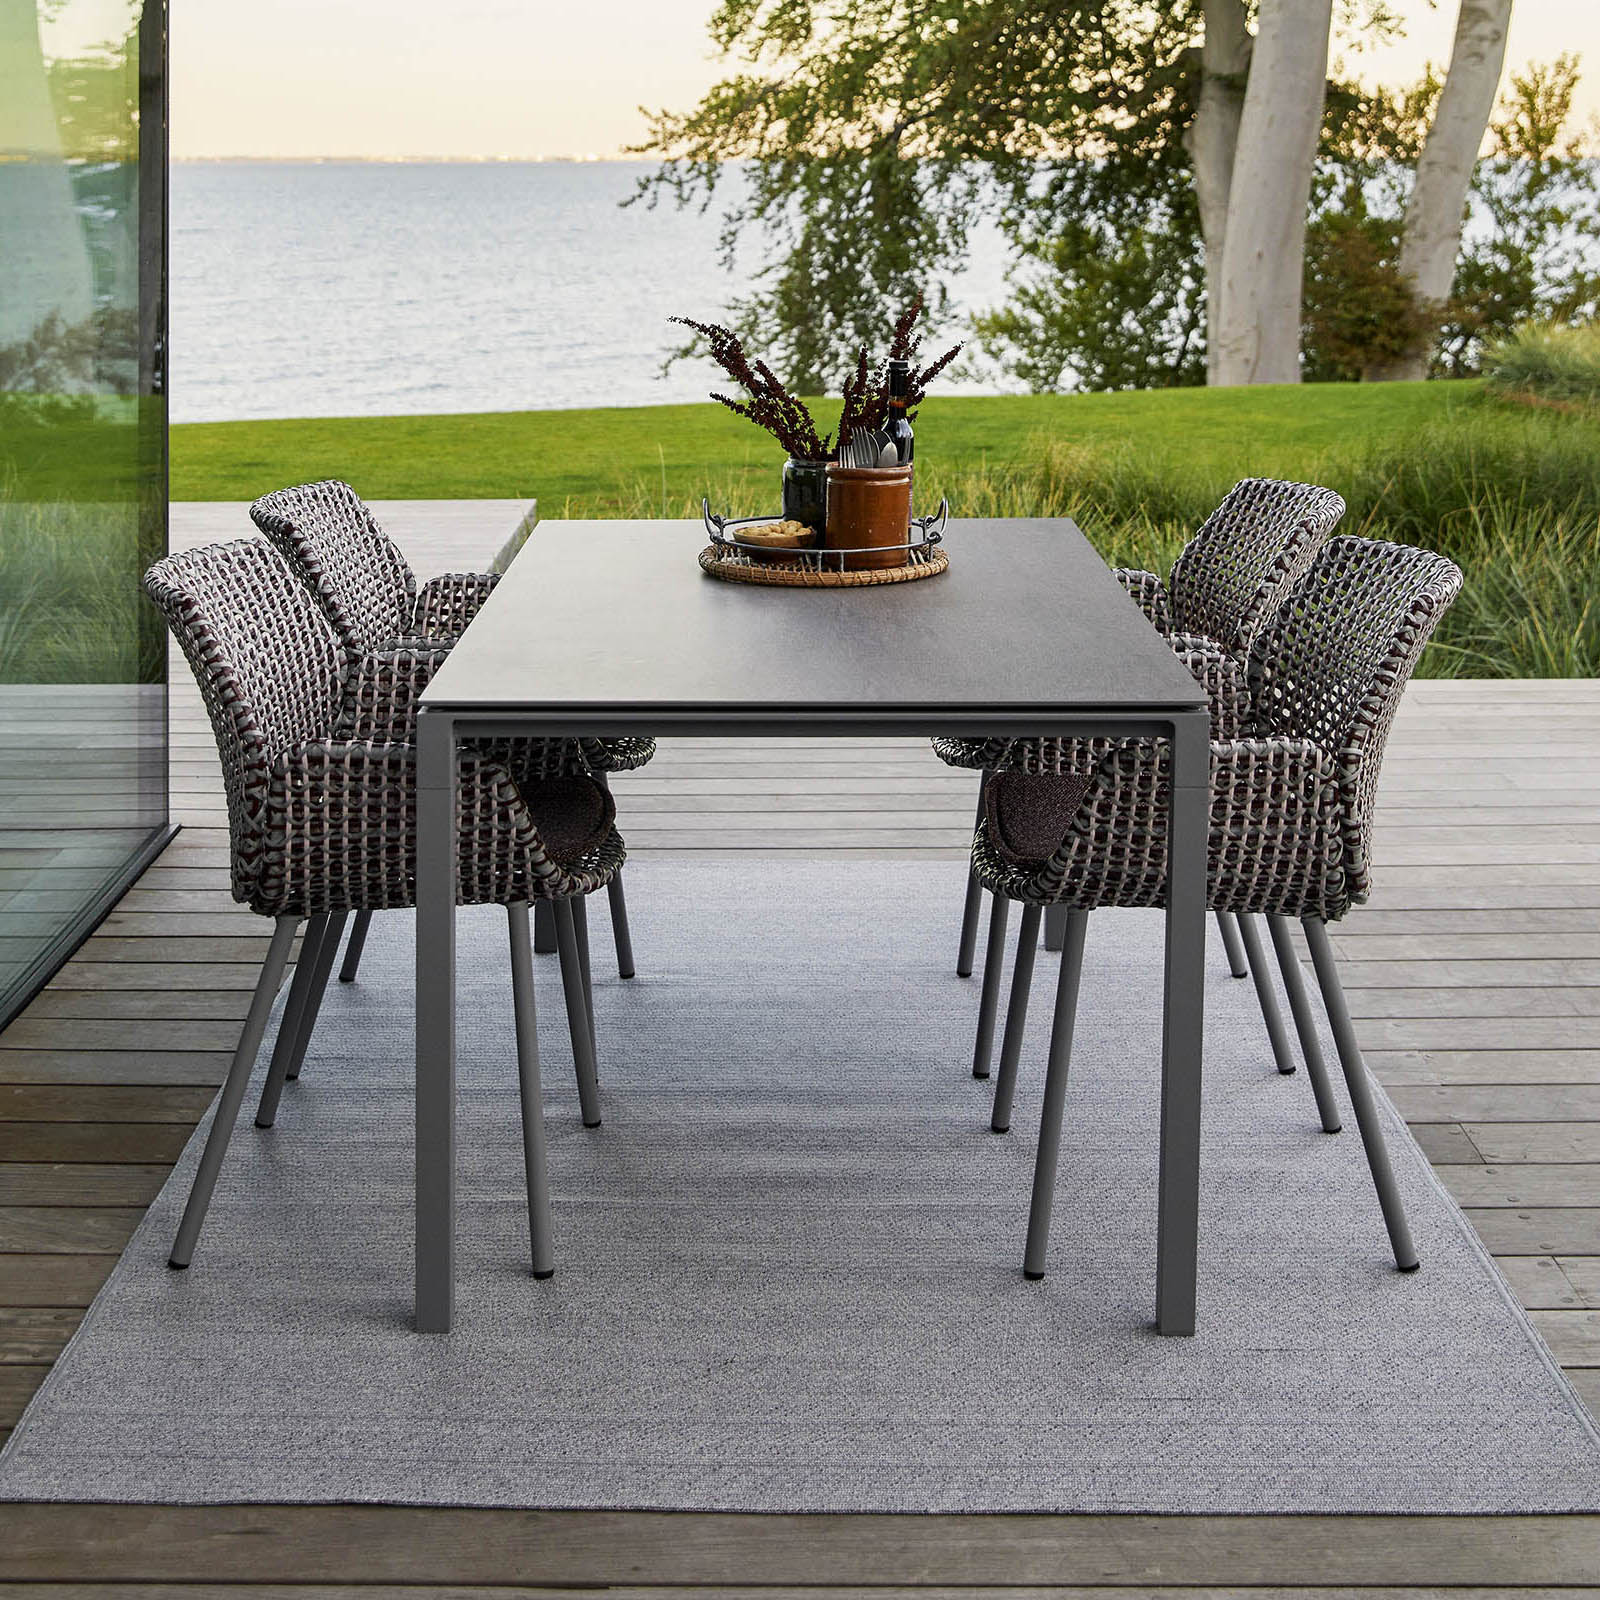 Pure Tisch 150x90 cm aus Aluminium in Light Grey mit Tischplatte aus Ceramic in Basalt